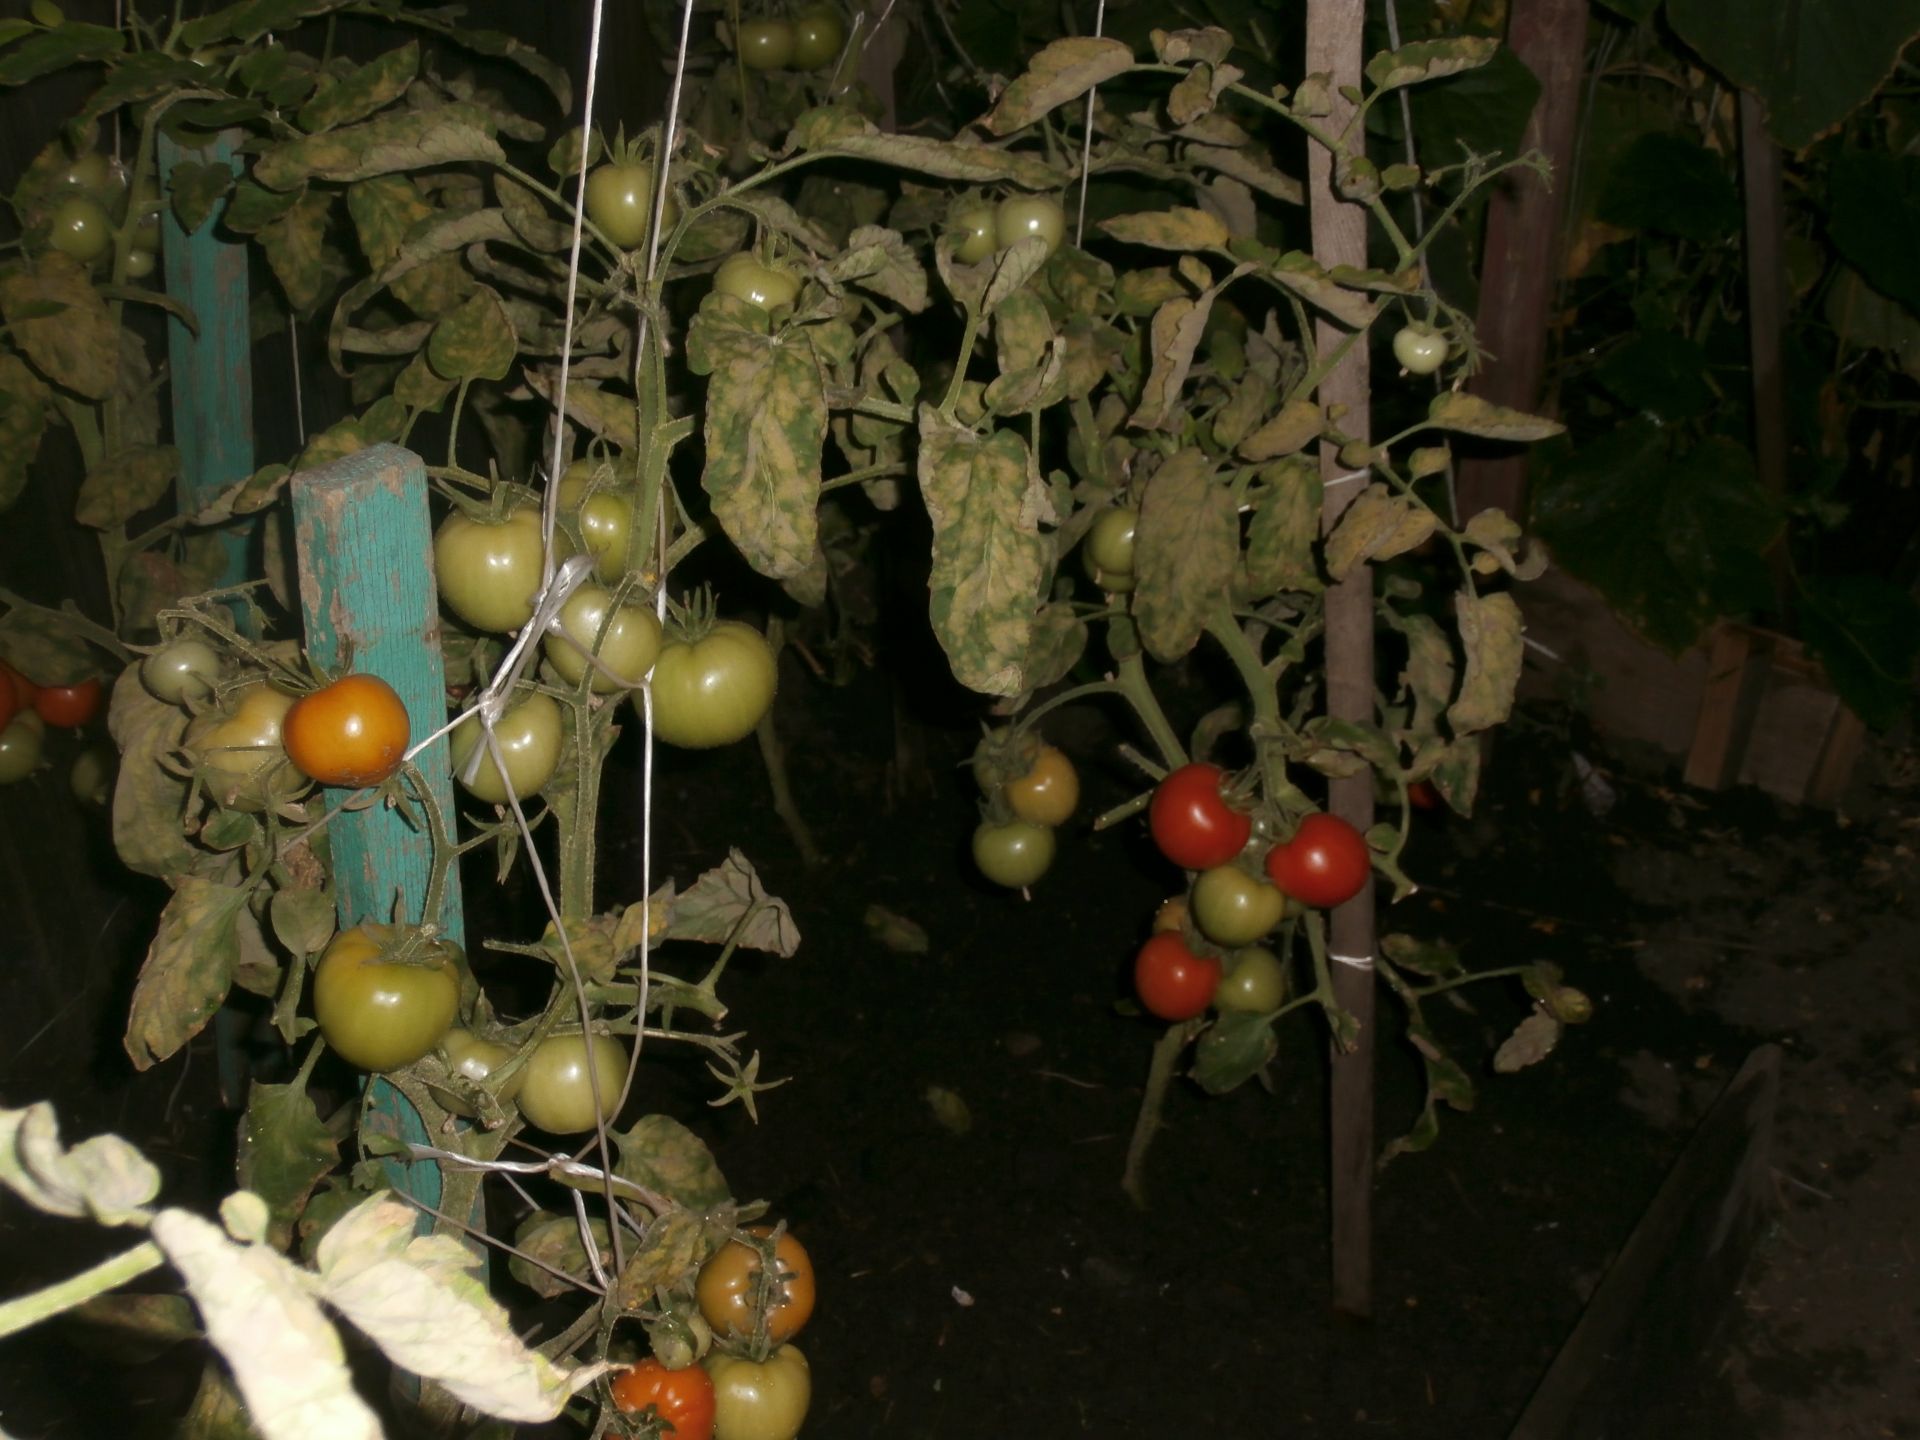 Секреты возделывания огурцов, капусты, лука раскрыла опытный садовод Агрызского района